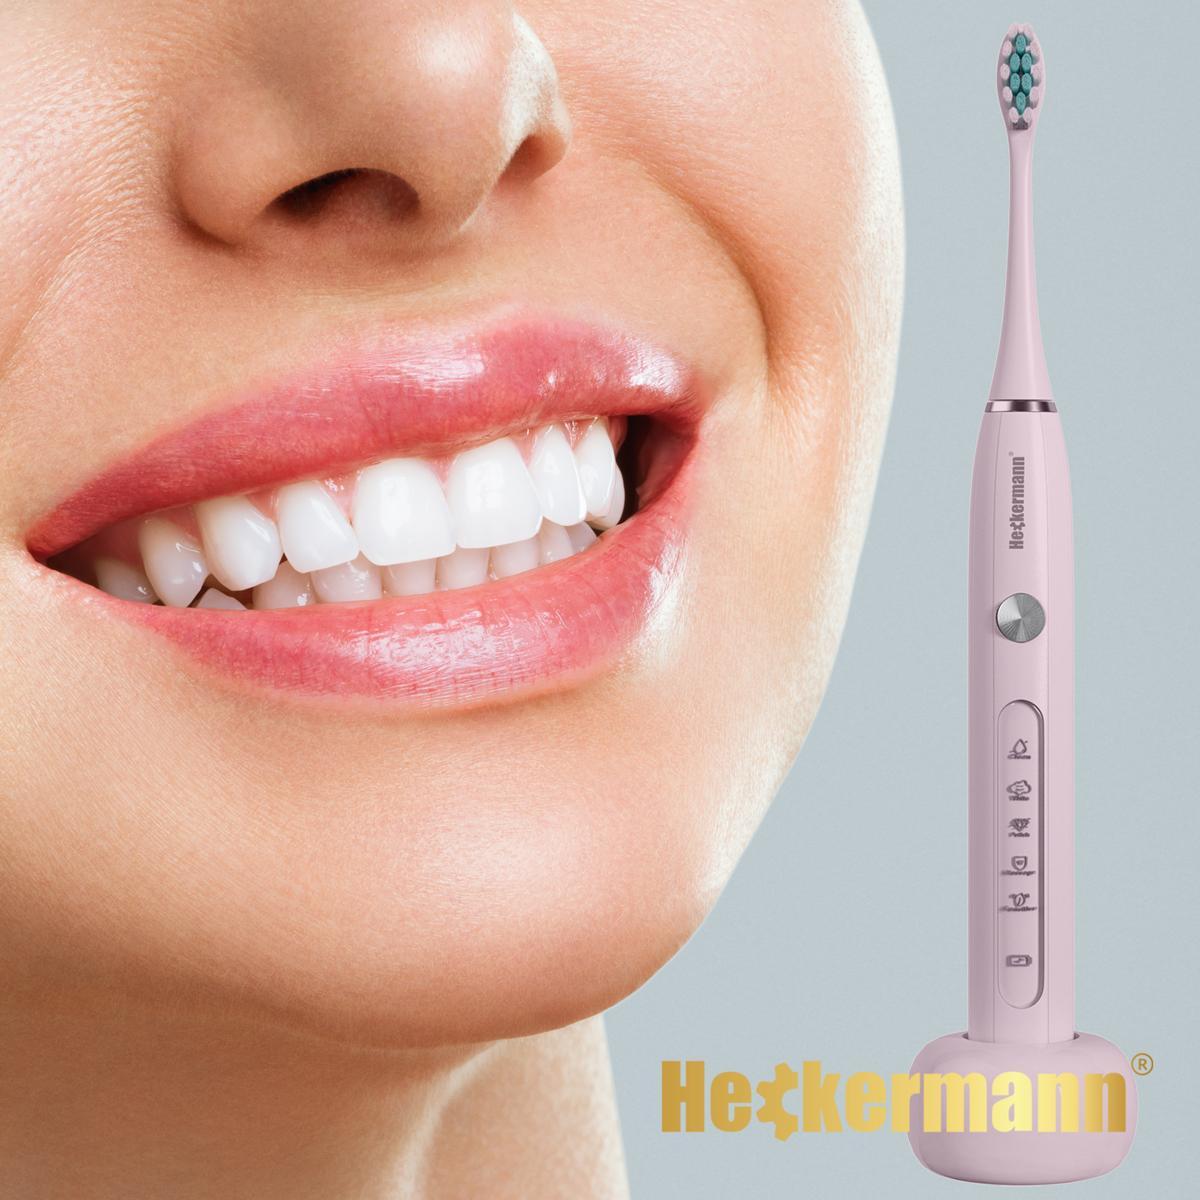 Zestaw Szczoteczka do zębów Heckermann DY-600 Różowa + akcesoria 6 Full Screen